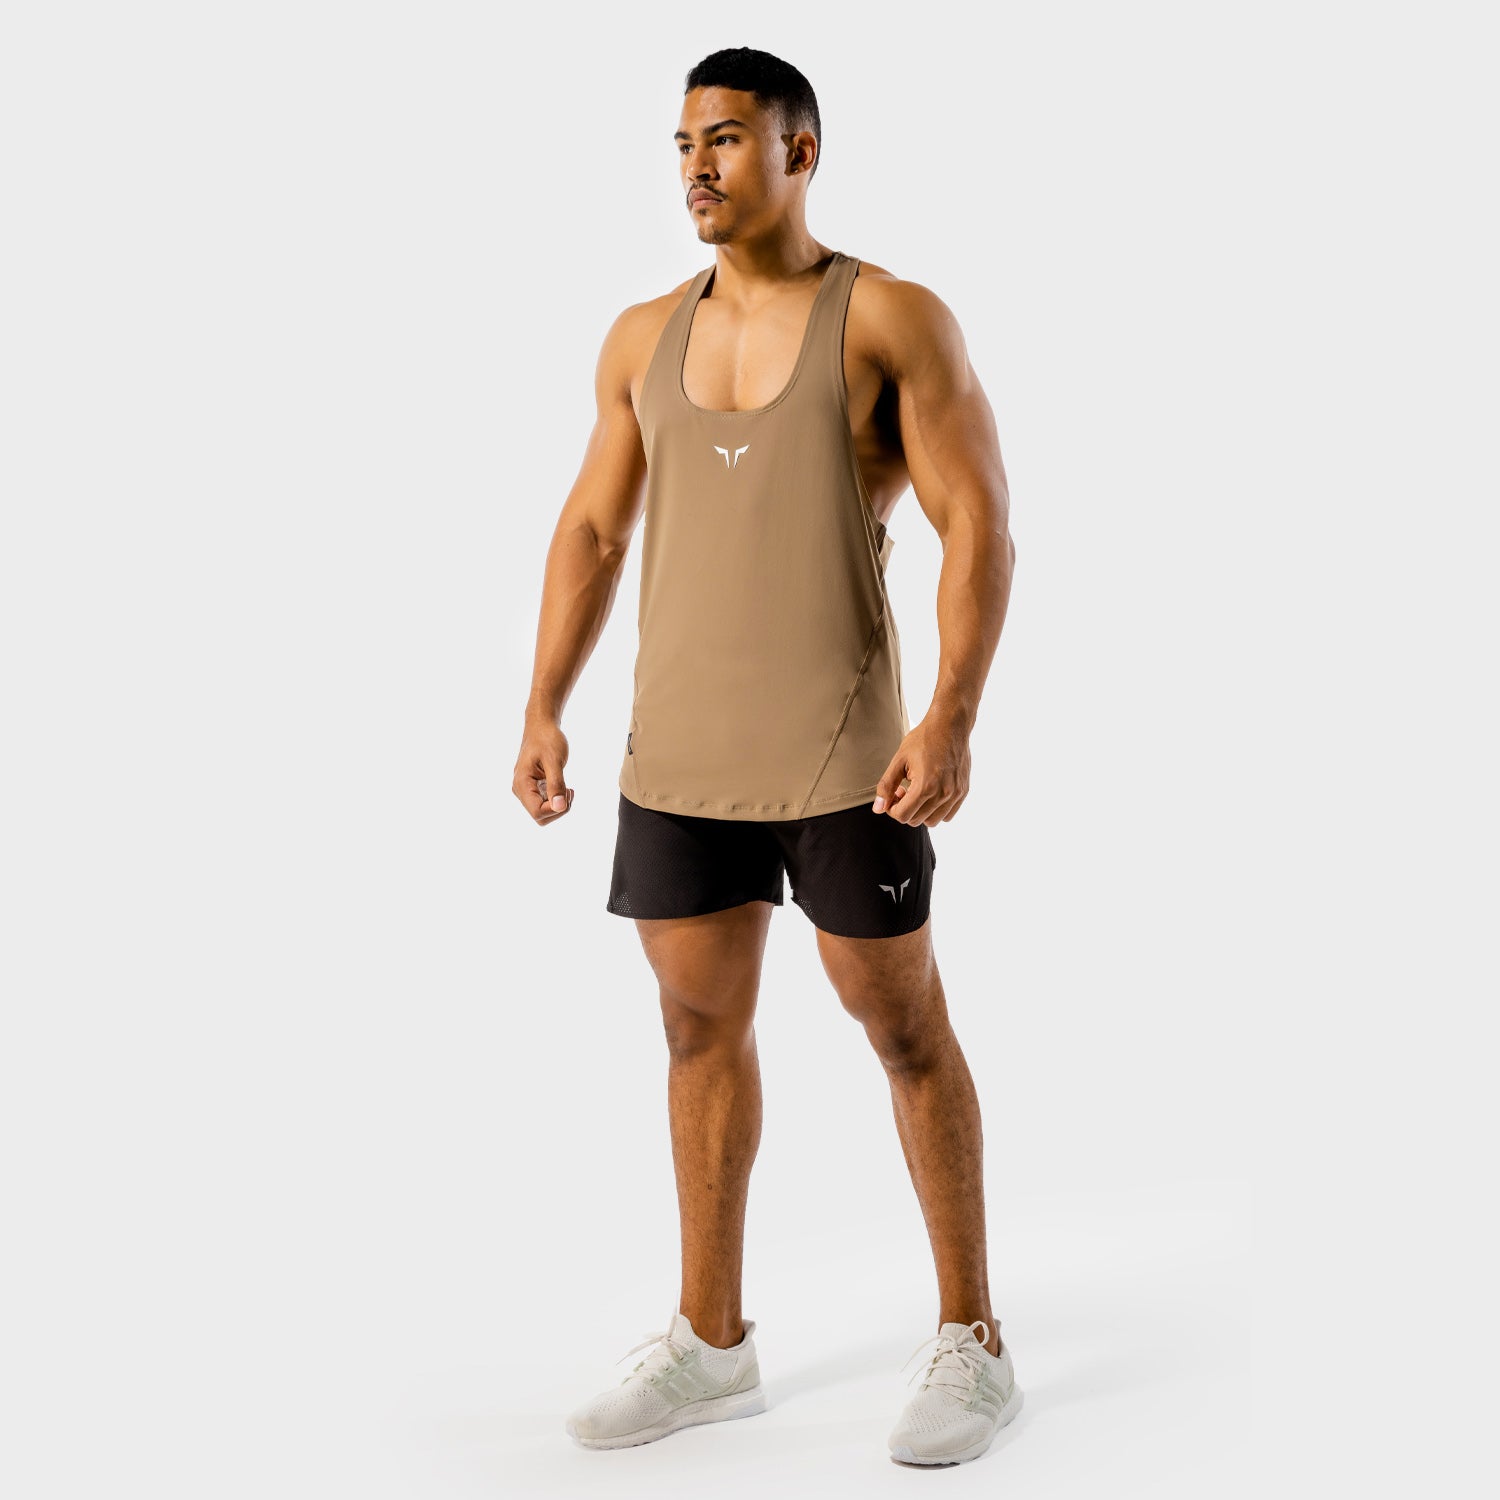 squatwolf-gym-wear-next-gen-stringer-brown-workout-stringers-vests-for-men